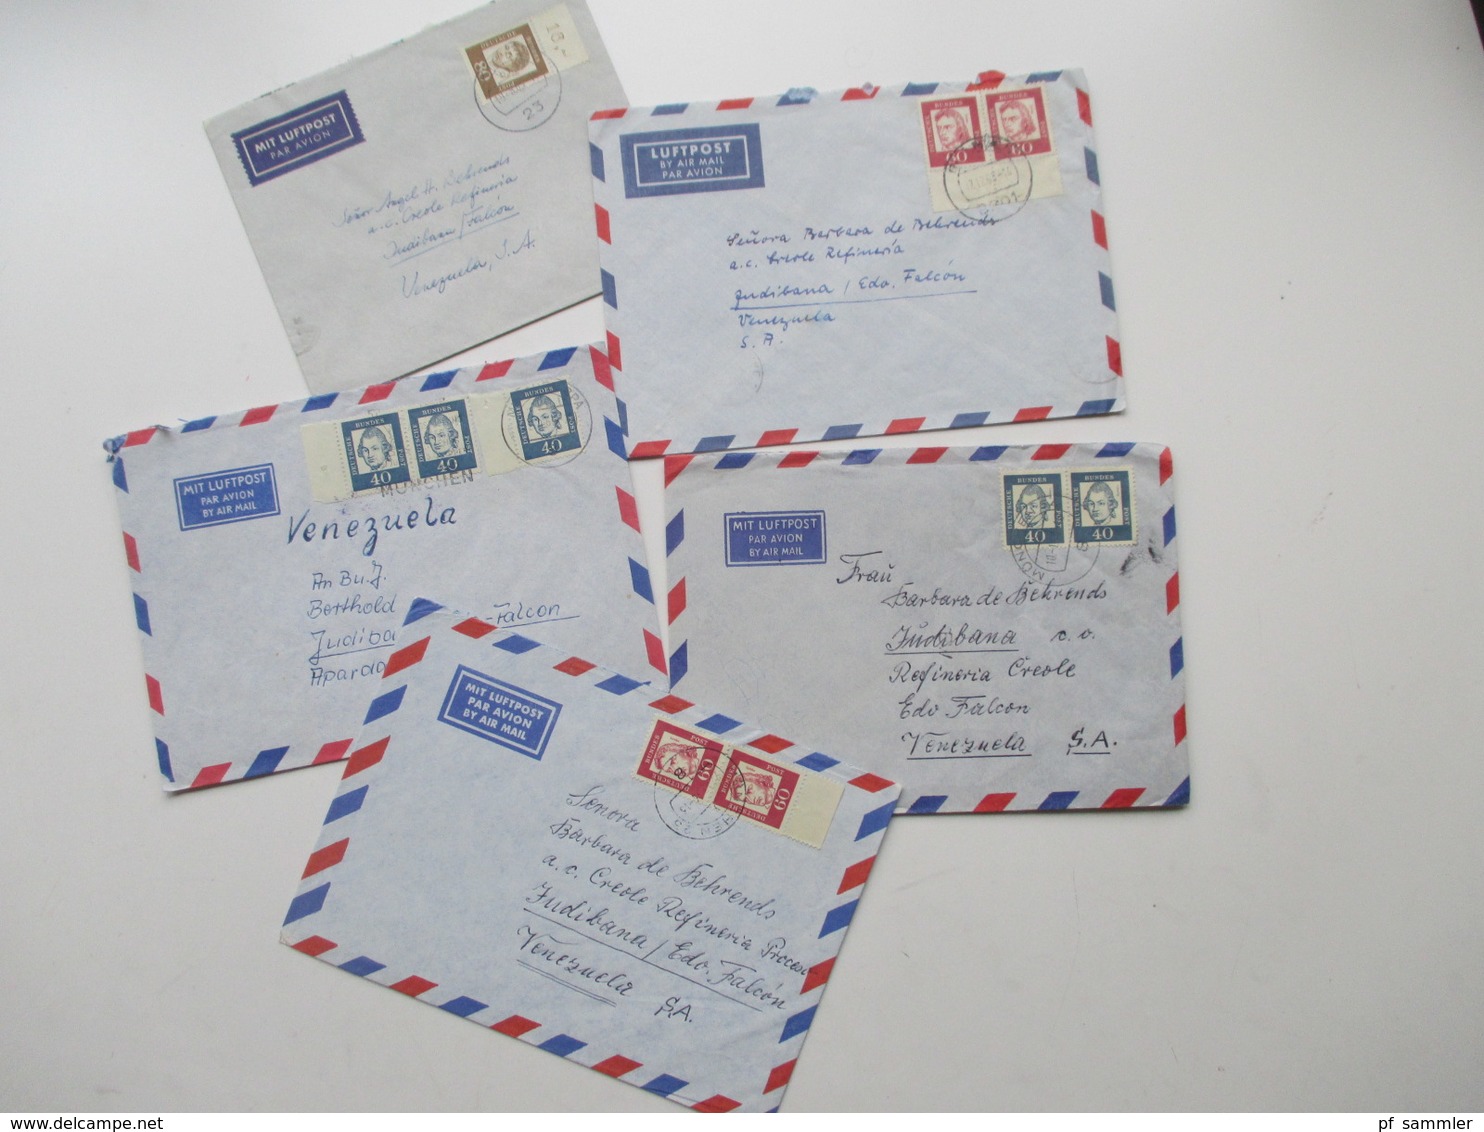 Belegeposten BRD / Berlin 1960er - 80er Jahre alles Übersee Luftpost! fast nur nach Venezuela! Insgesamt 500 Briefe!